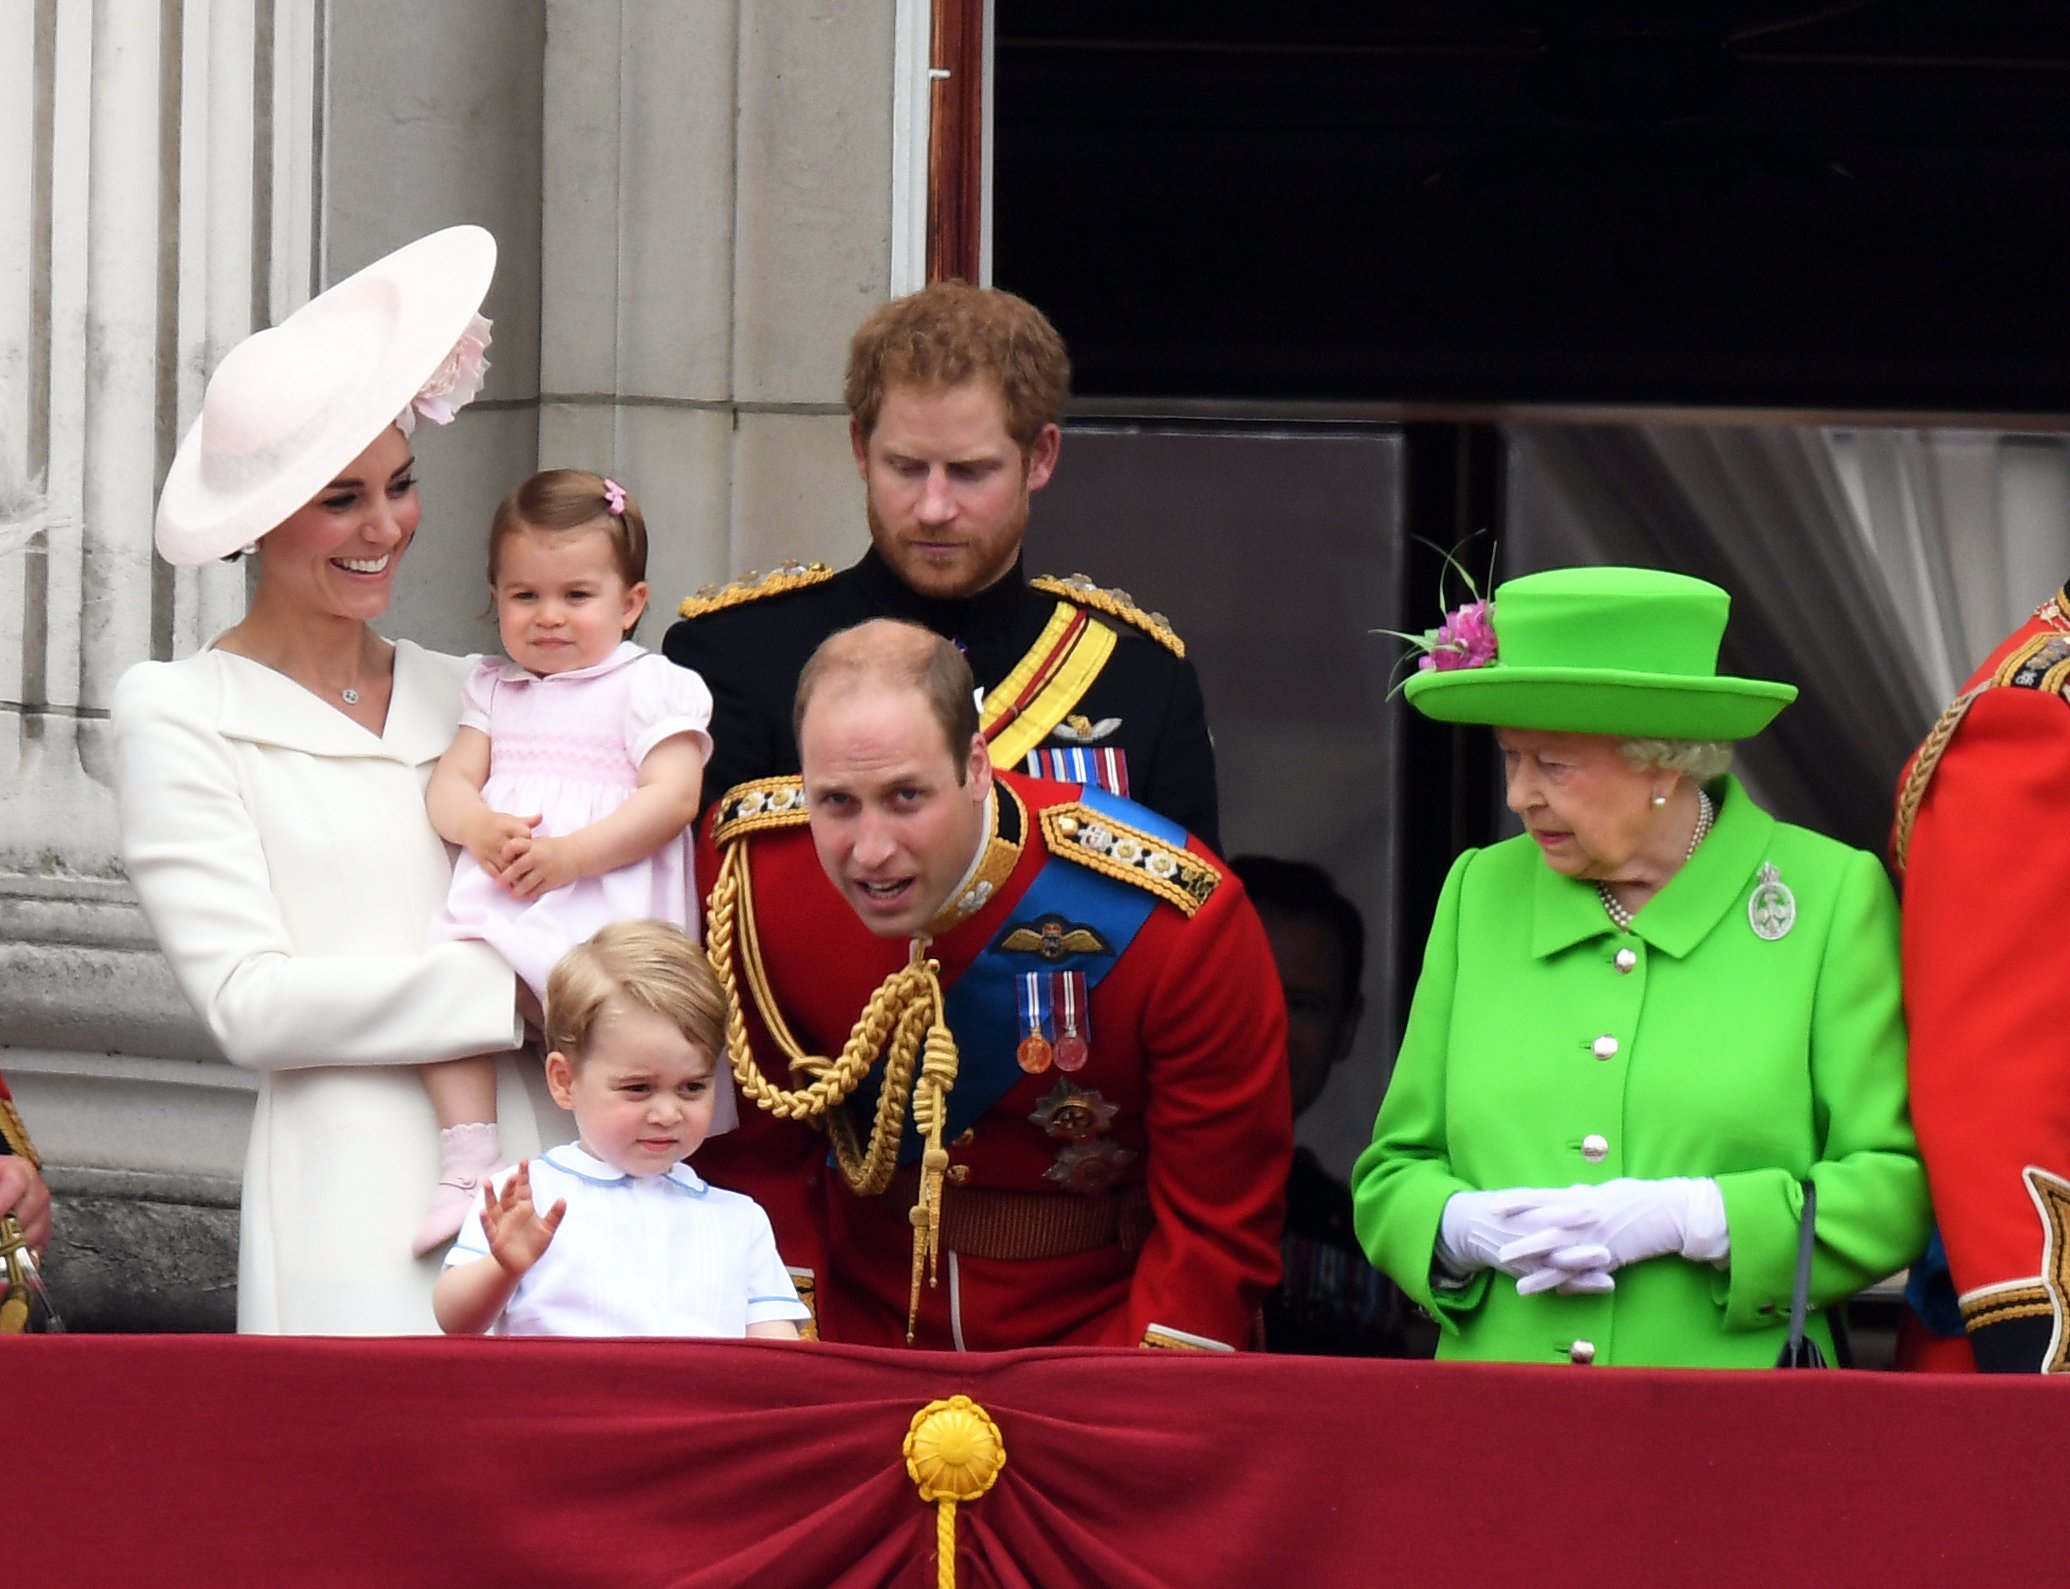 La duquesa Kate, la princesa Charlotte, el príncipe George, el príncipe William, el príncipe Harry y la reina Elizabeth II en el balcón del Palacio de Buckingham después de la ceremonia Trooping the Colour el 11 de junio de 2016 en Londres, Inglaterra | Foto: Getty Images